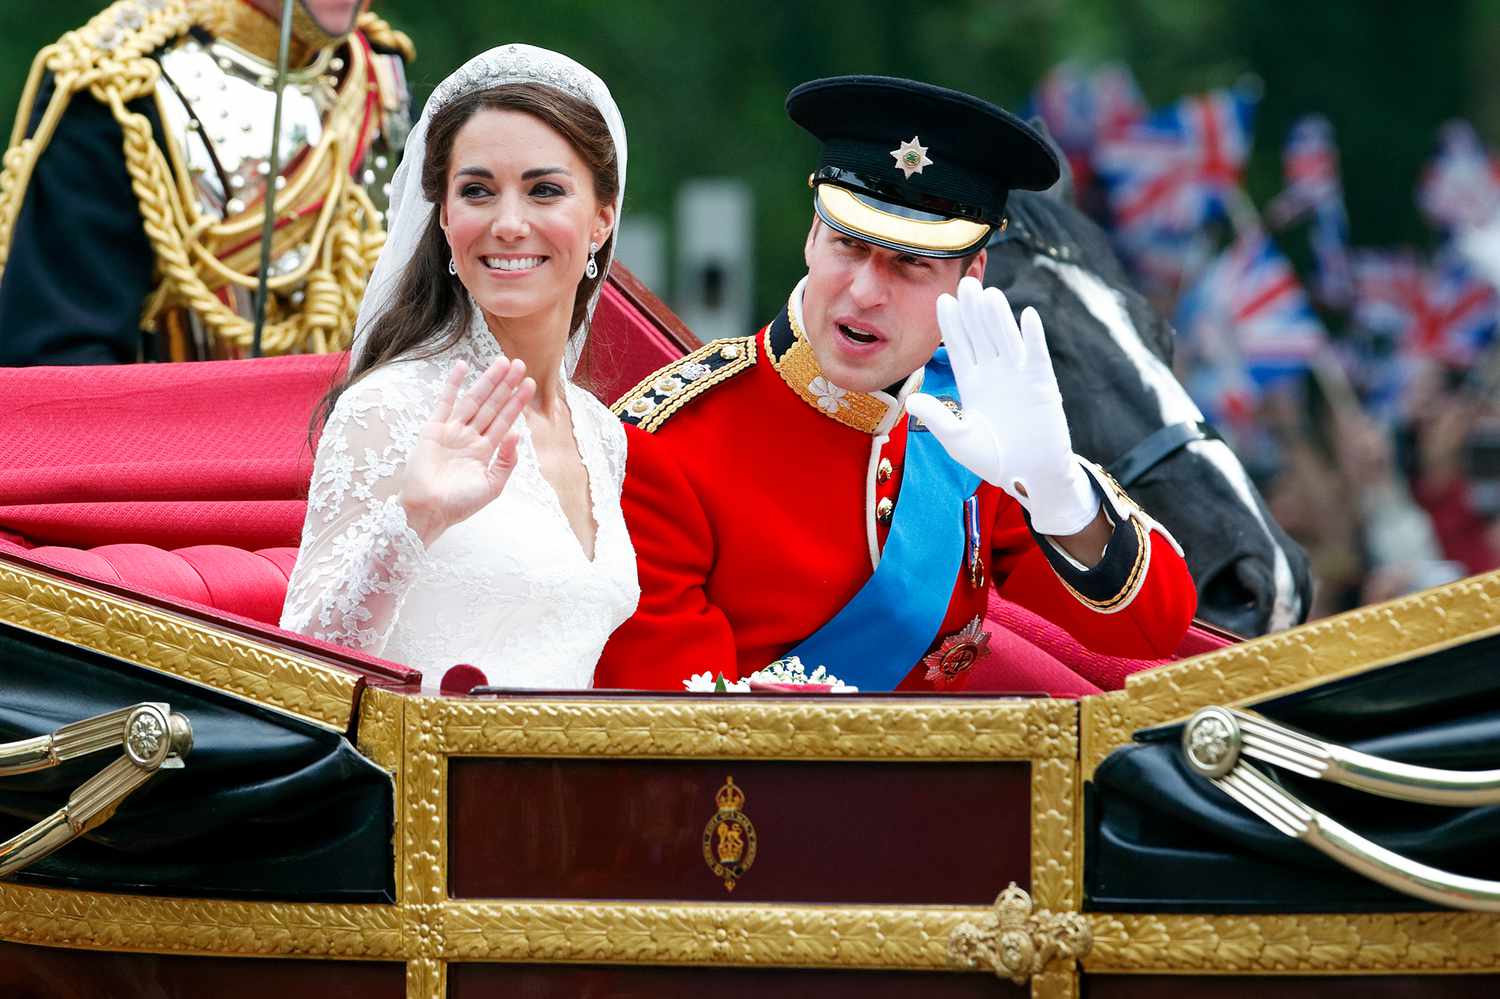 Die wahre Geschichte hinter dem Missgeschick der königlichen Hochzeitsprozession von Prinz William und Kate Middleton